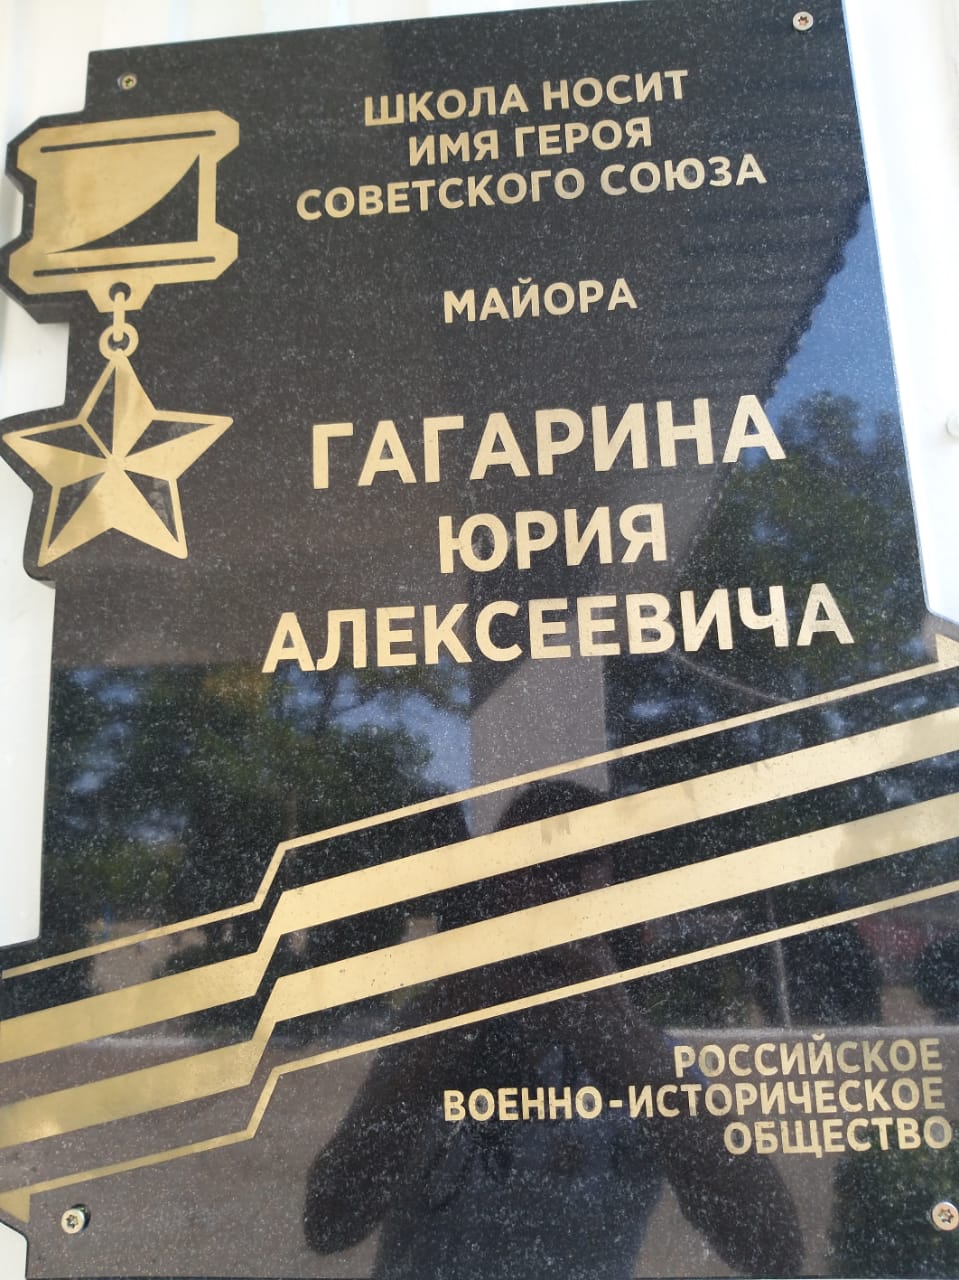 В школе №8 состоялось открытие мемориальной доски Юрию Гагарину